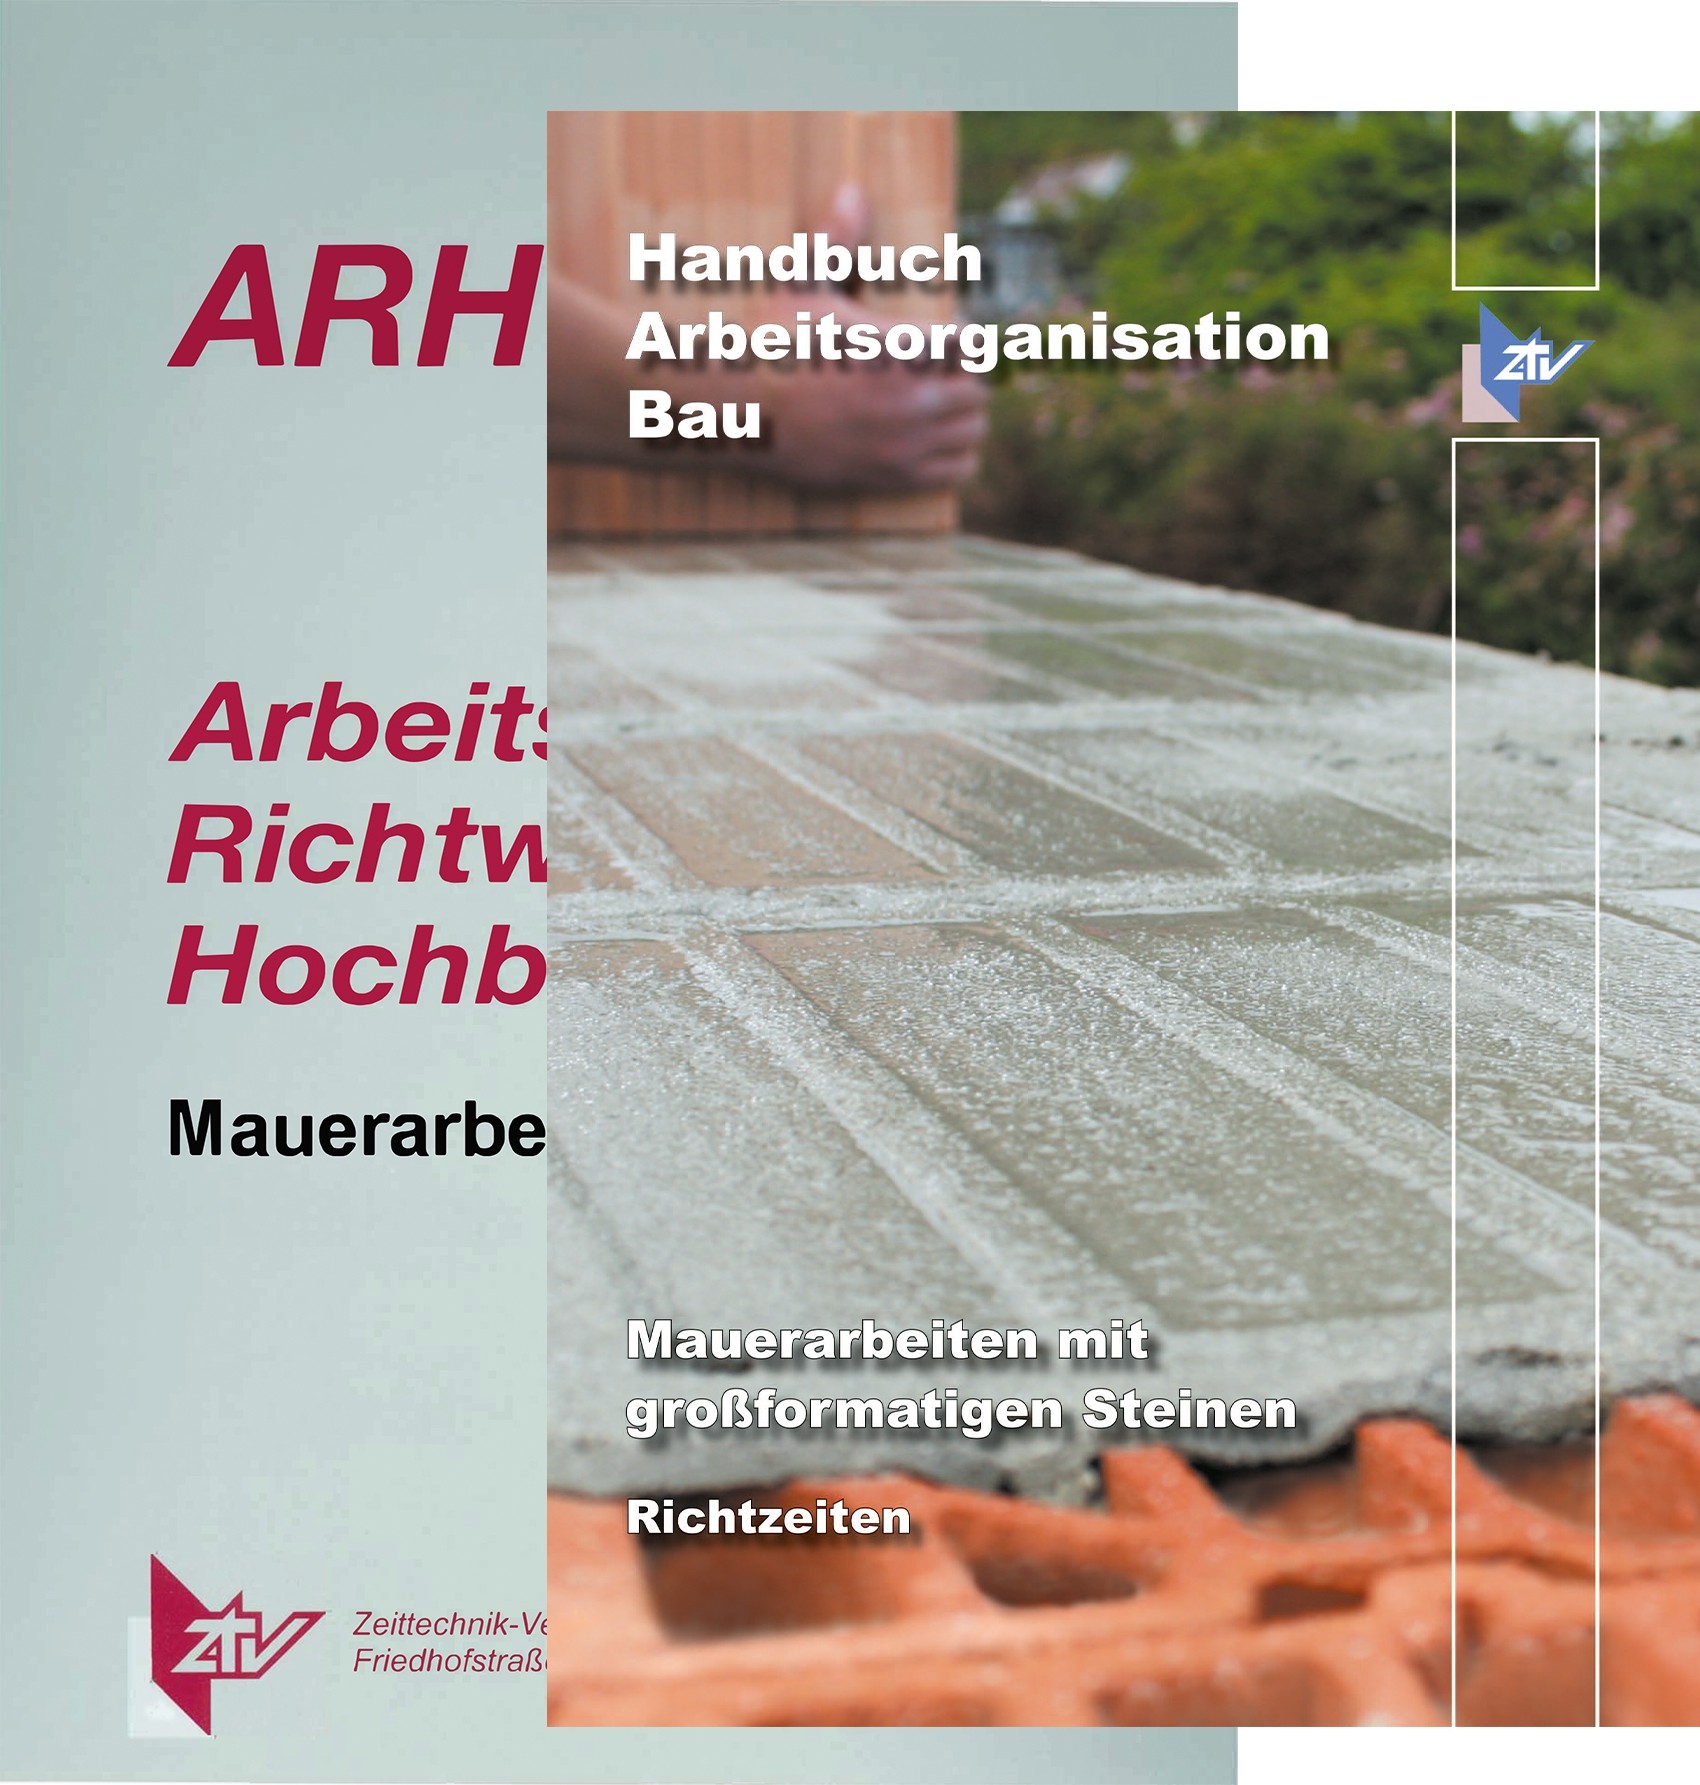  ARH-Tabelle Mauerarbeiten mit großformatigen Steinen und Handbuch Arbeitsorganisation Bau Richtzeiten Mauerarbeiten